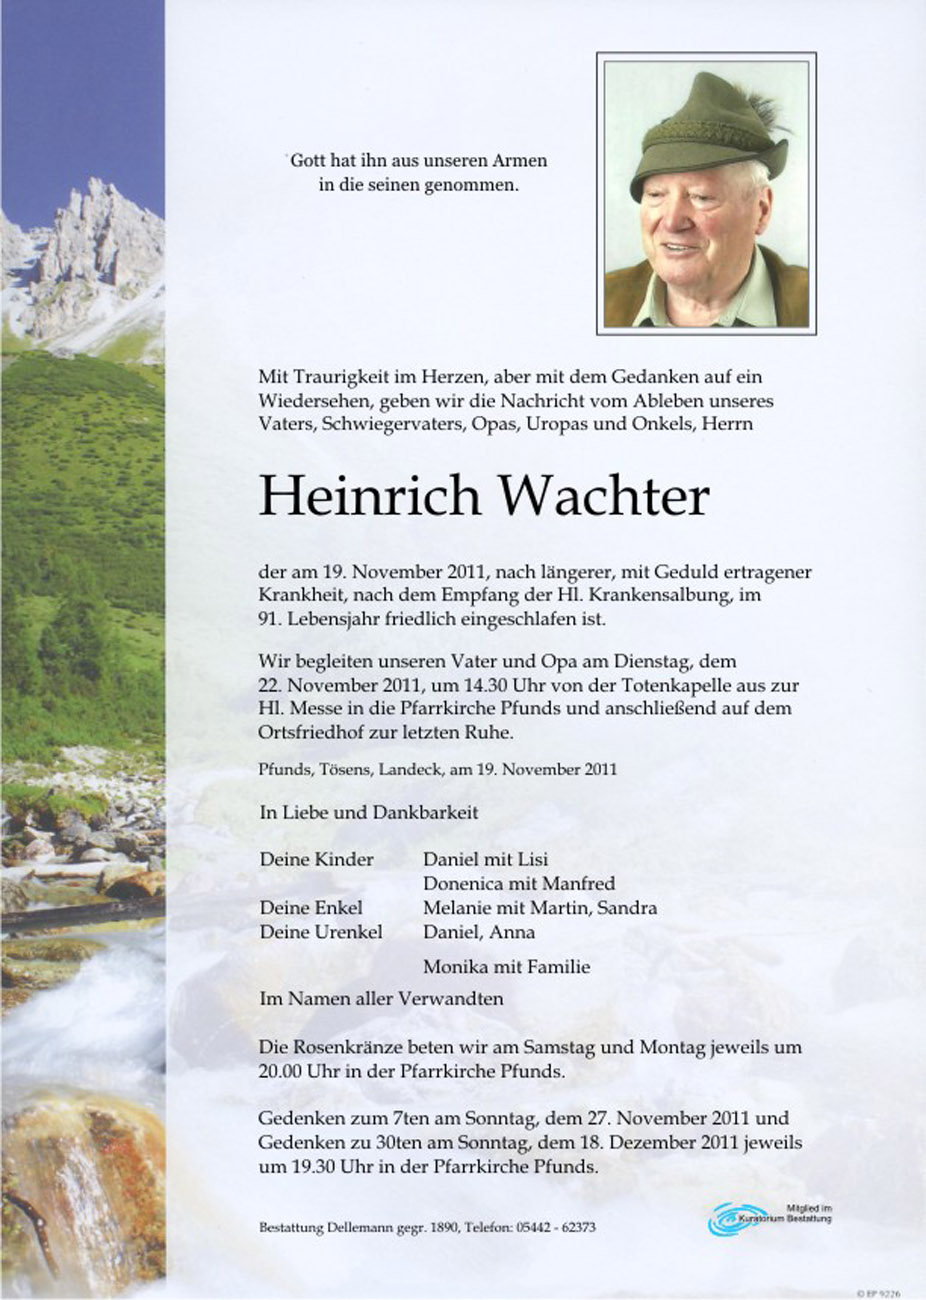   Heinrich Wachter